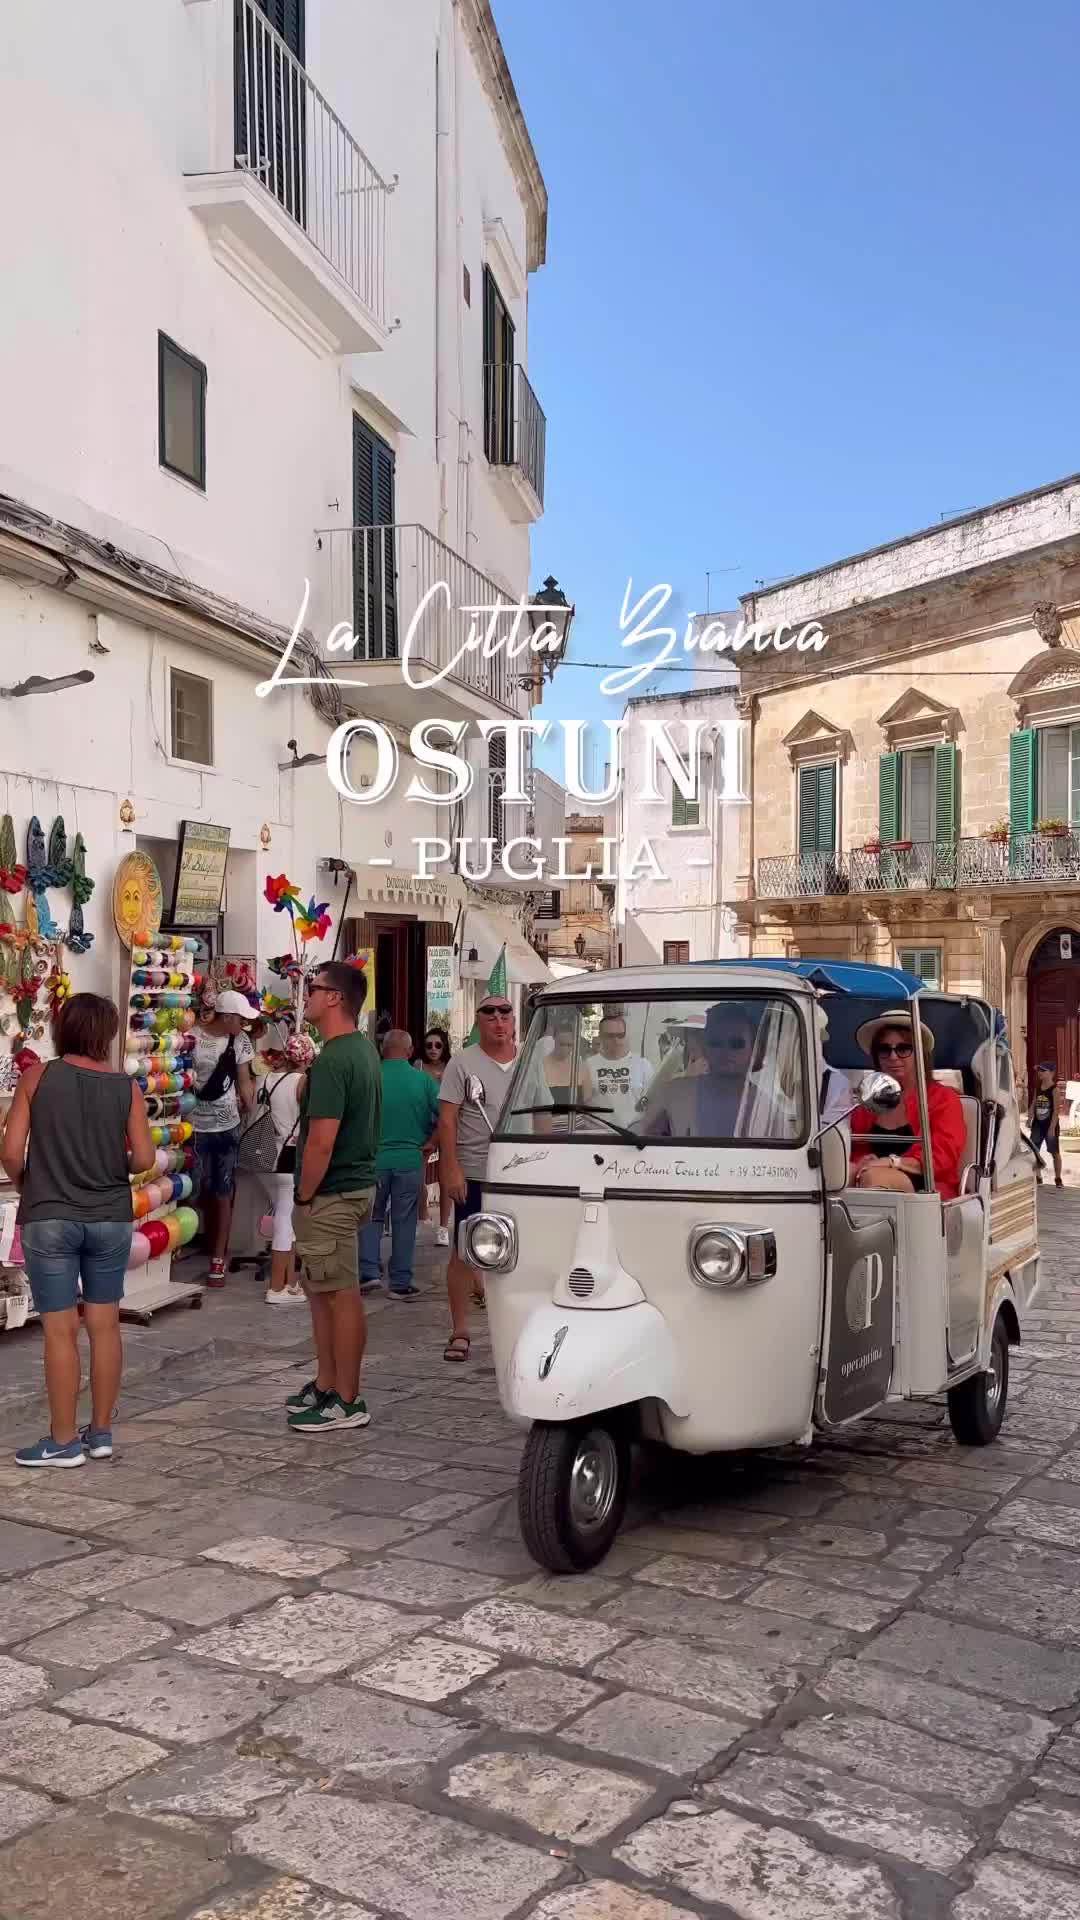 Explore Ostuni, Puglia: Top Spots & Hidden Gems